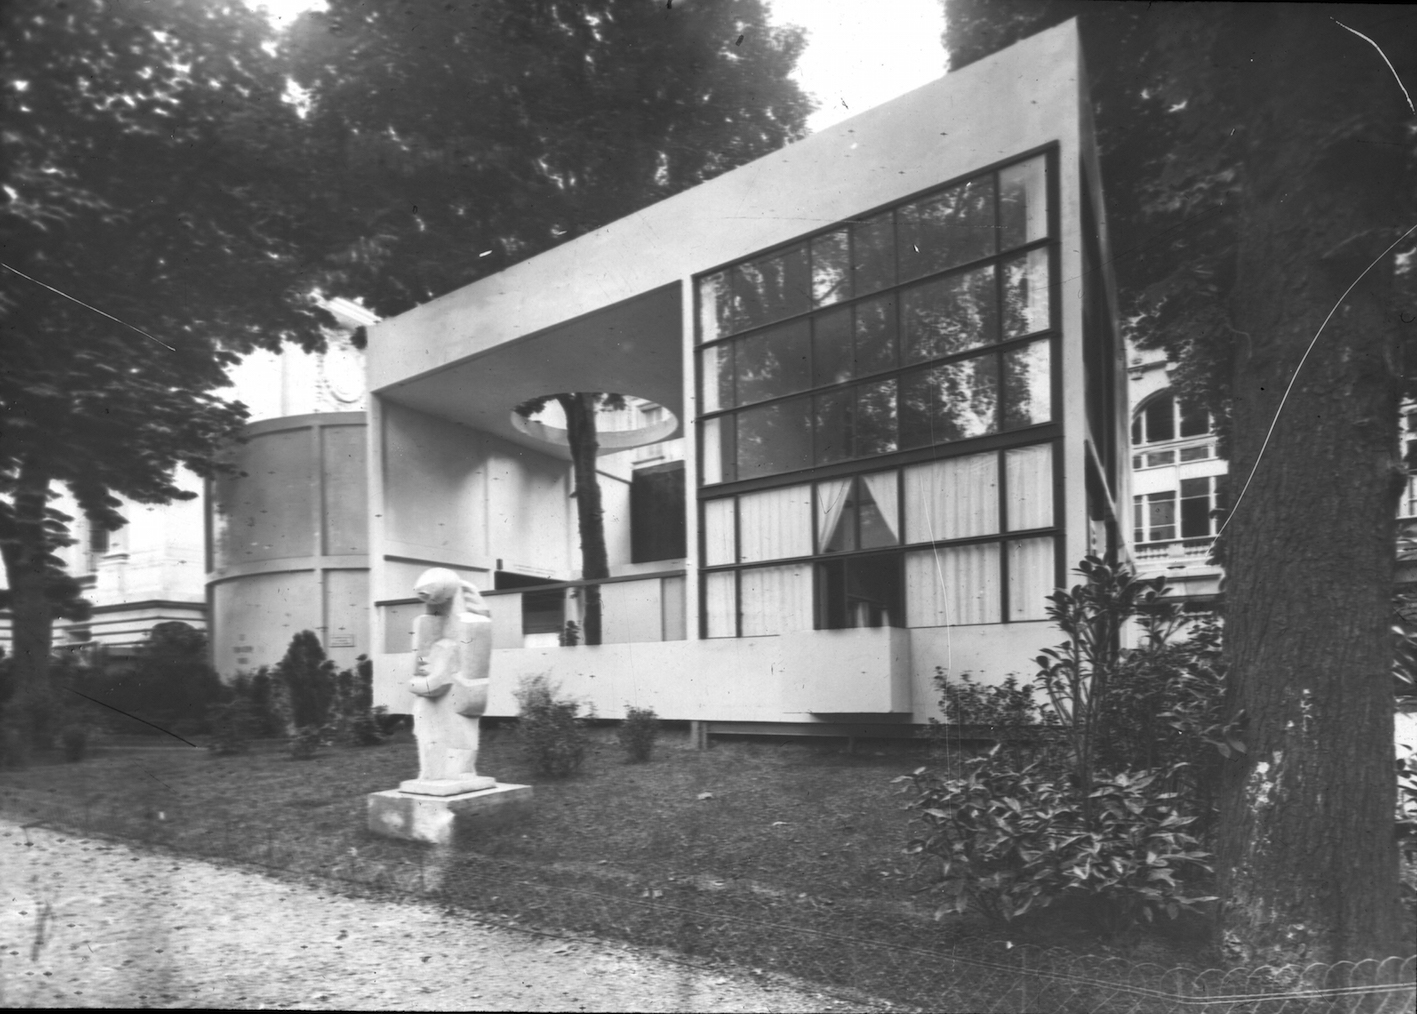 Le Corbusier, Pierre Jeanneret, Pavillon de l’Esprit Nouveau, Paris, 1925. 